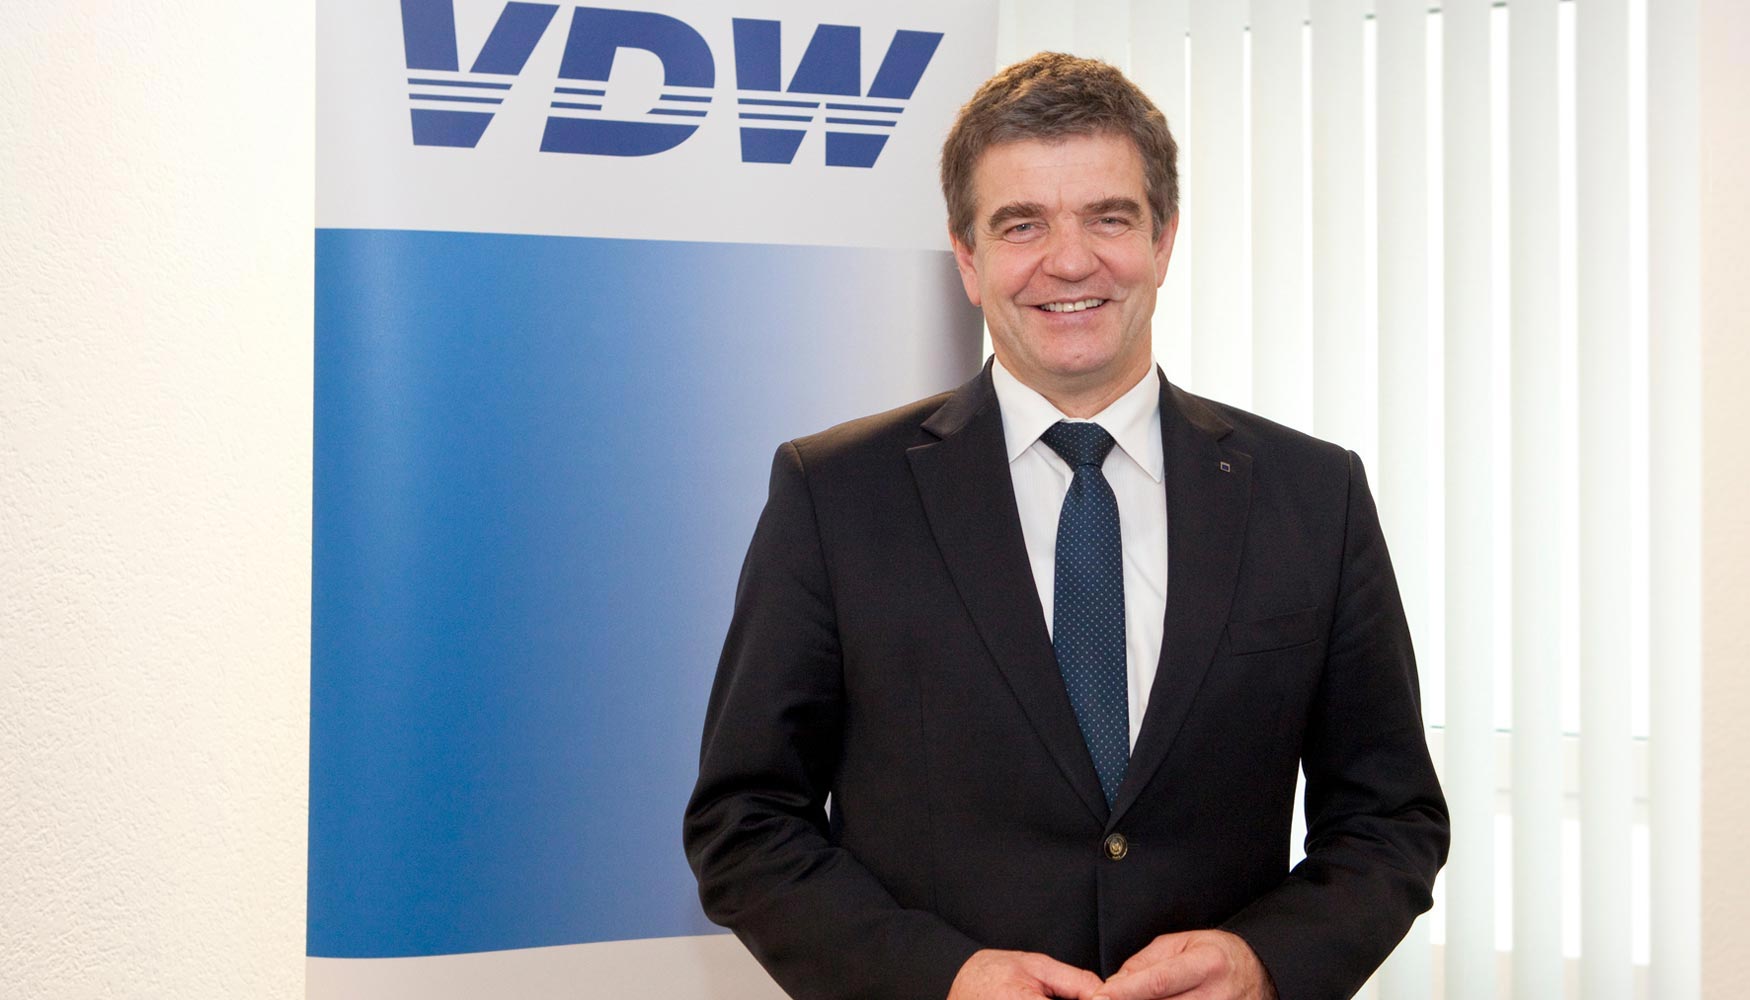 Dr. Heinz-Jrgen Prokop, nuevo presidente de Comit Ejecutivo de la VDW desde el 1 de enero de 2016